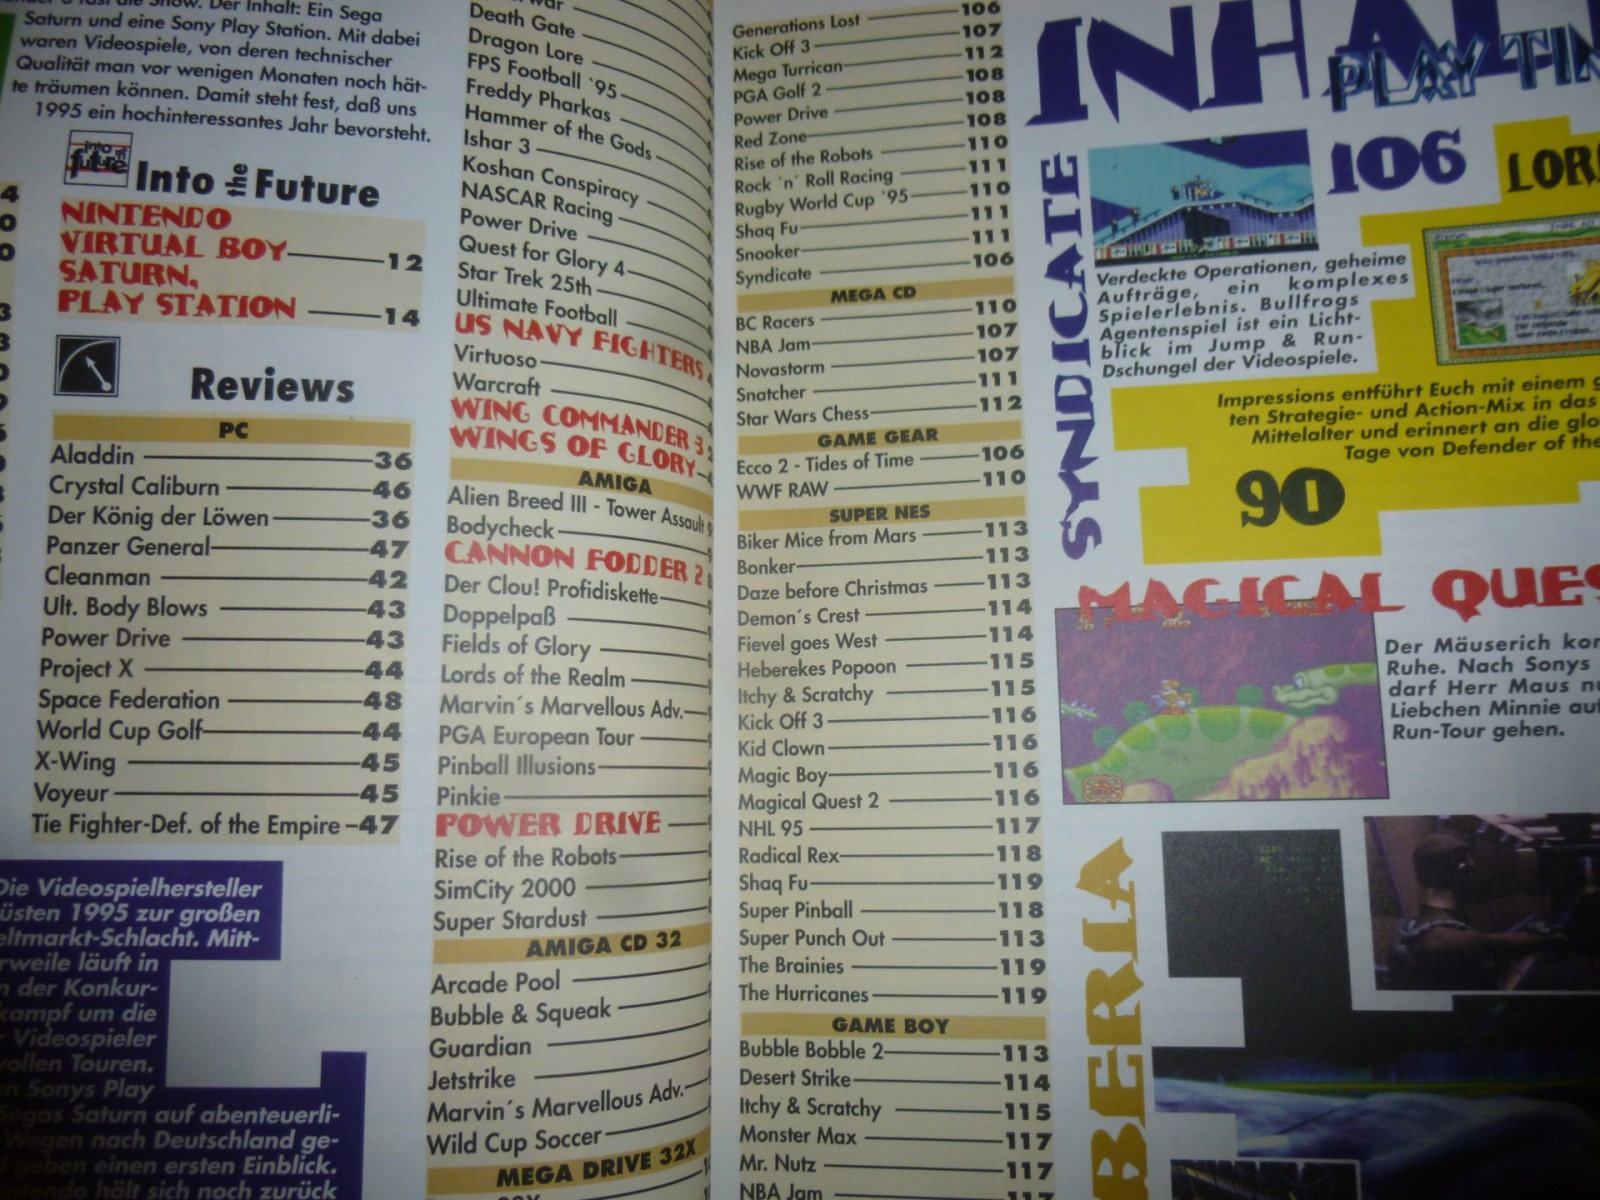 Play Time - Das Computer- und Videospiele-Magazin - Ausgabe 2/95 1995 3